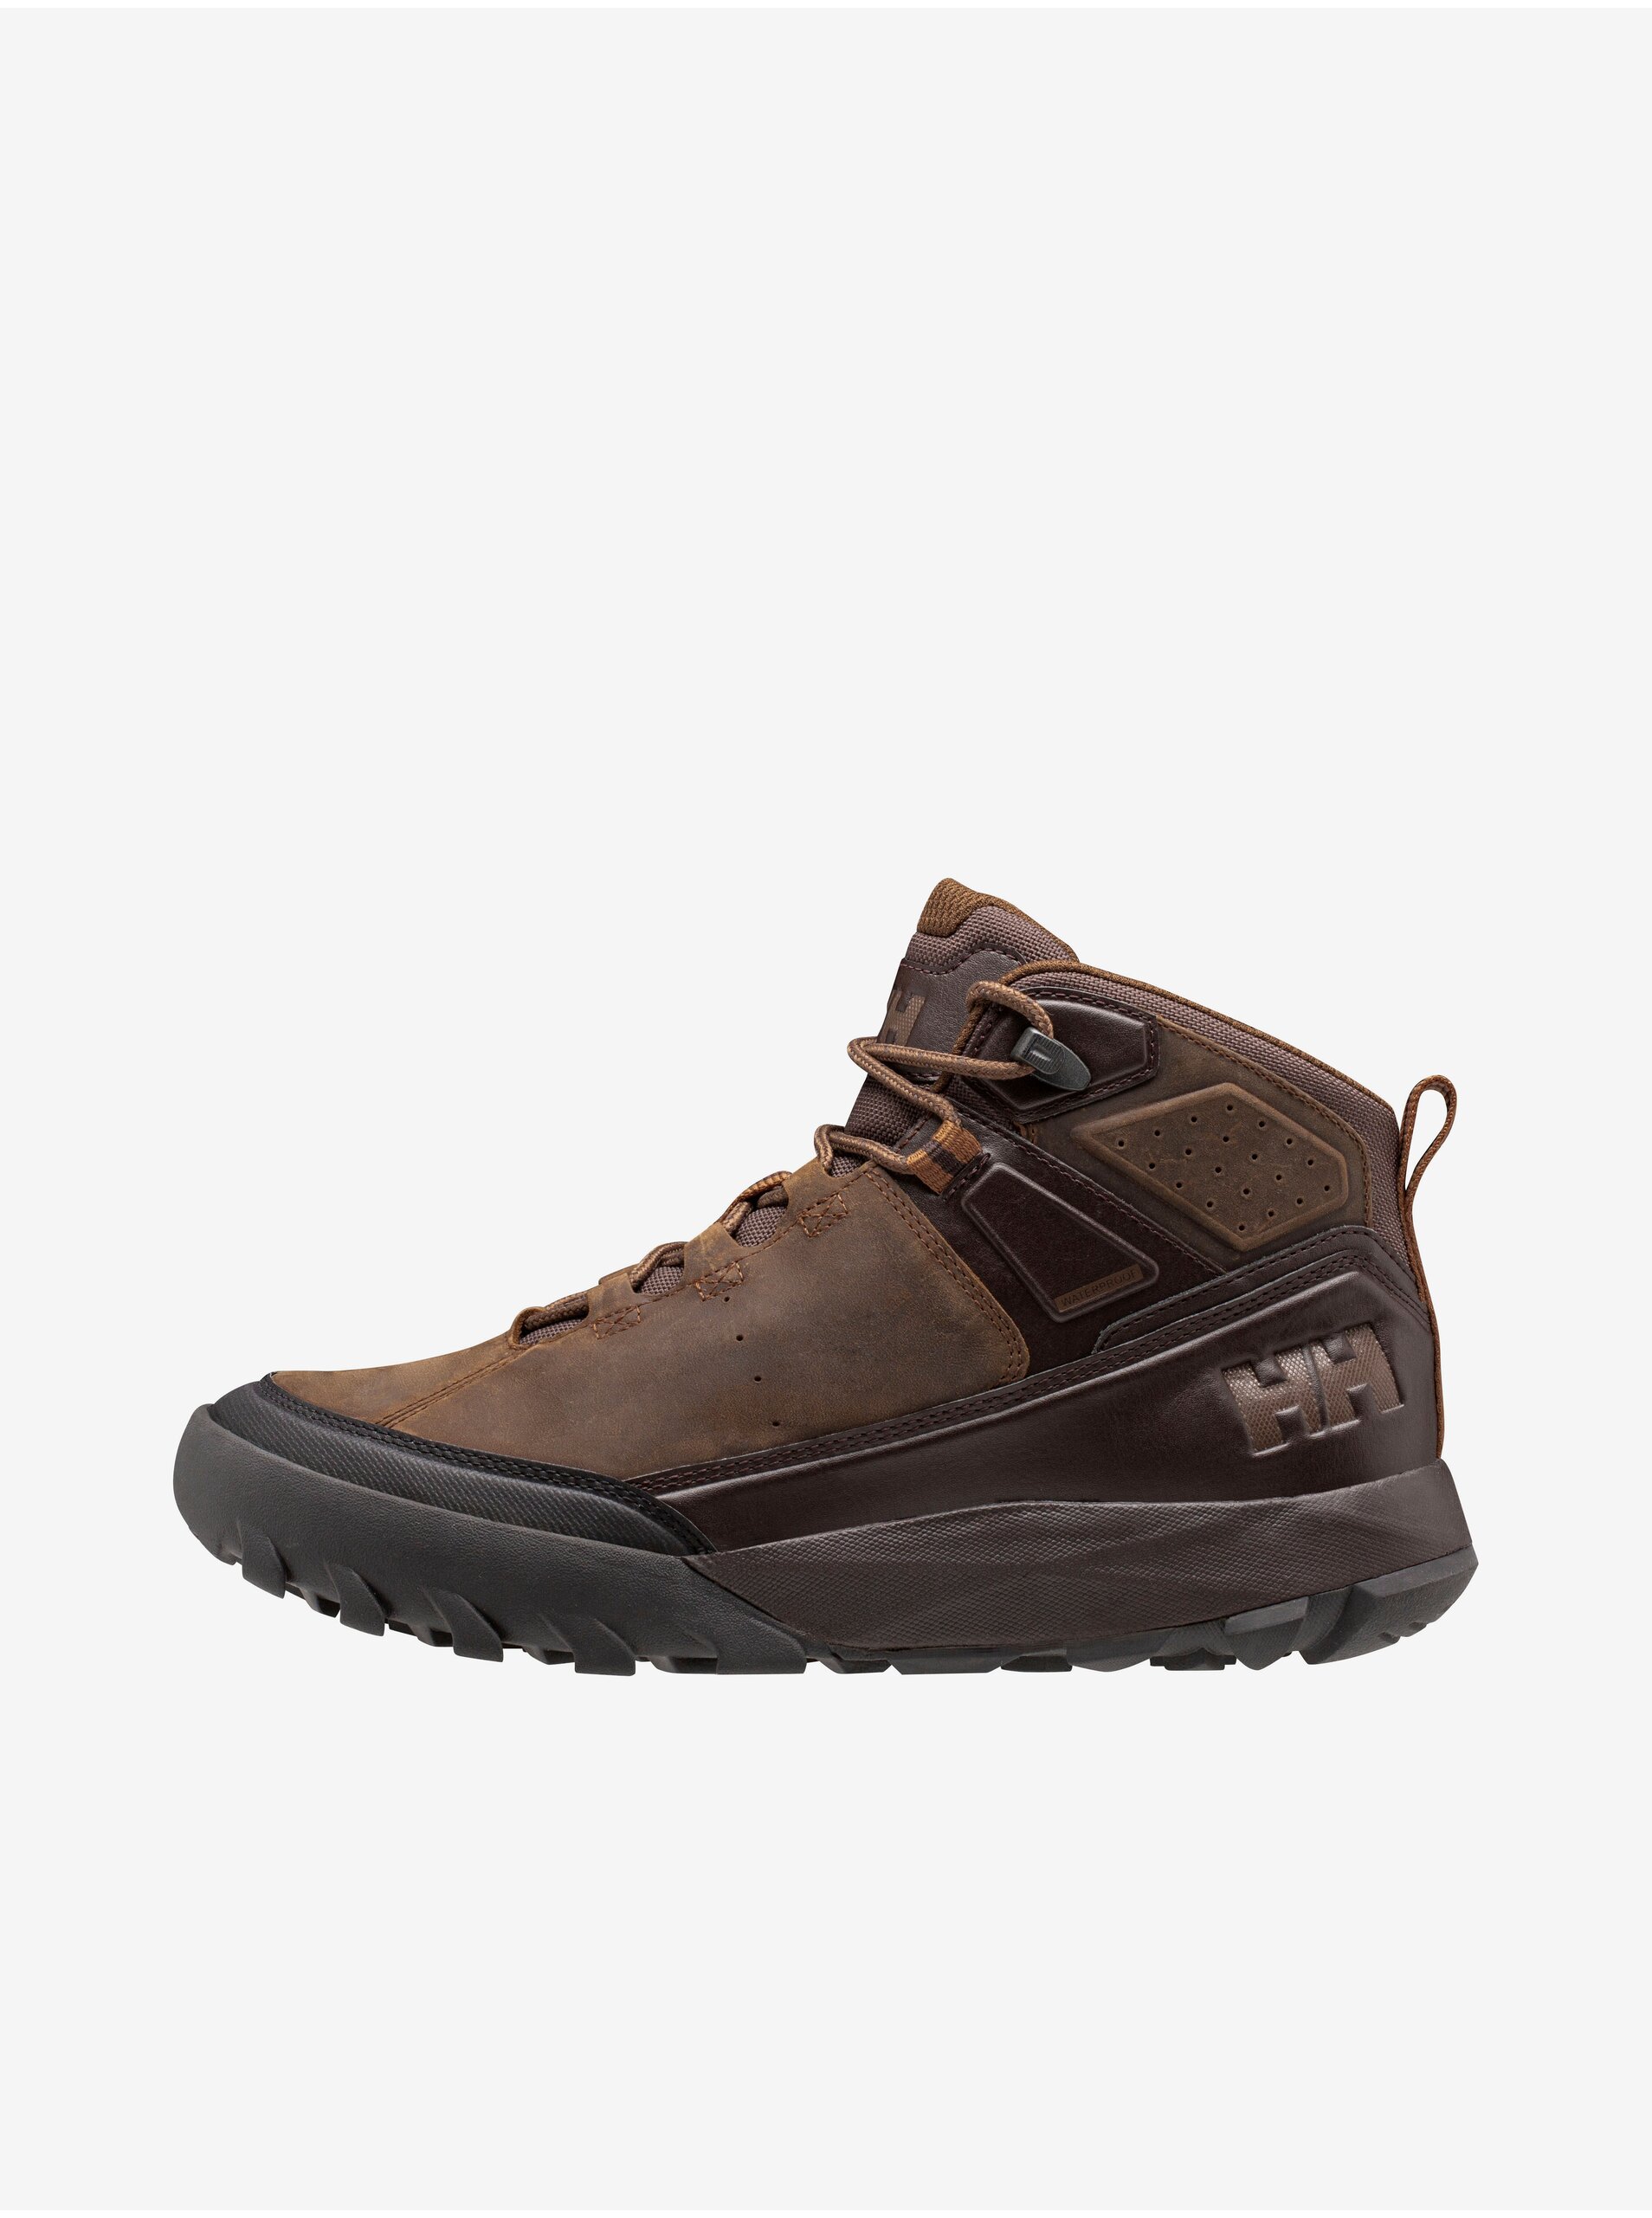 E-shop Tmavě hnědé pánské kožené kotníkové boty HELLY HANSEN Sierra LX